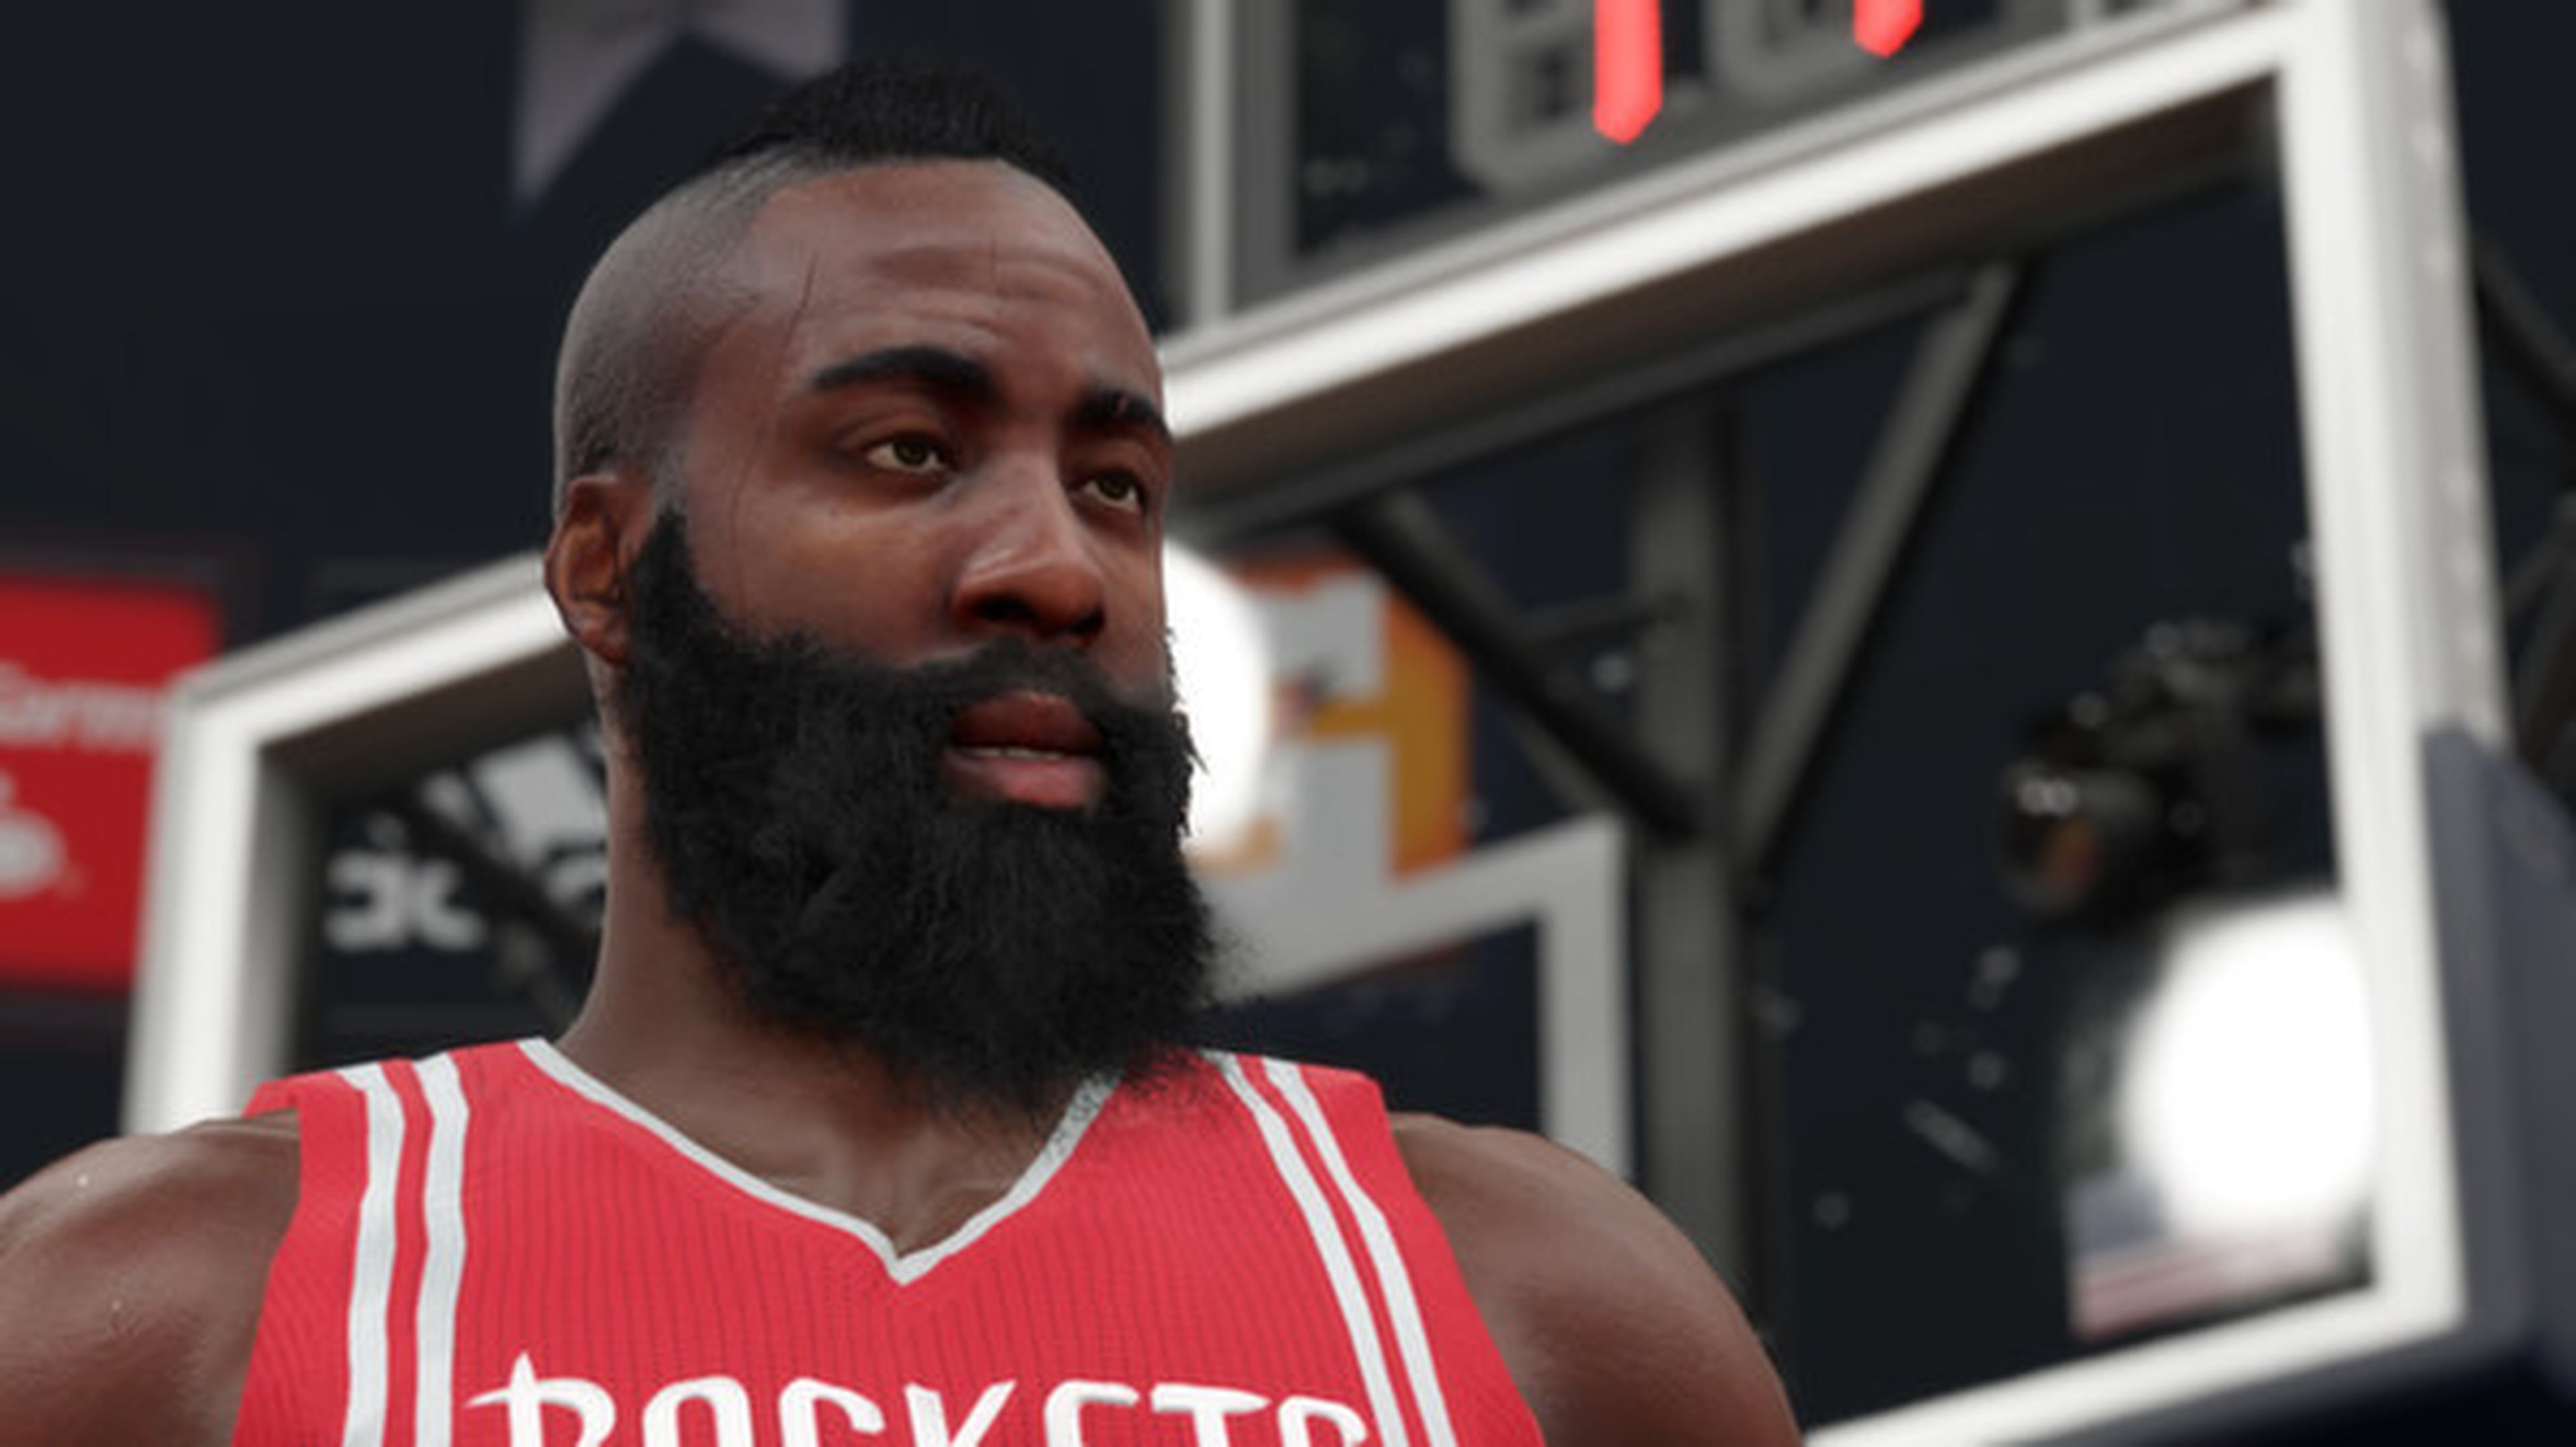 Juega gratis a NBA 2K15 este fin de semana en Steam